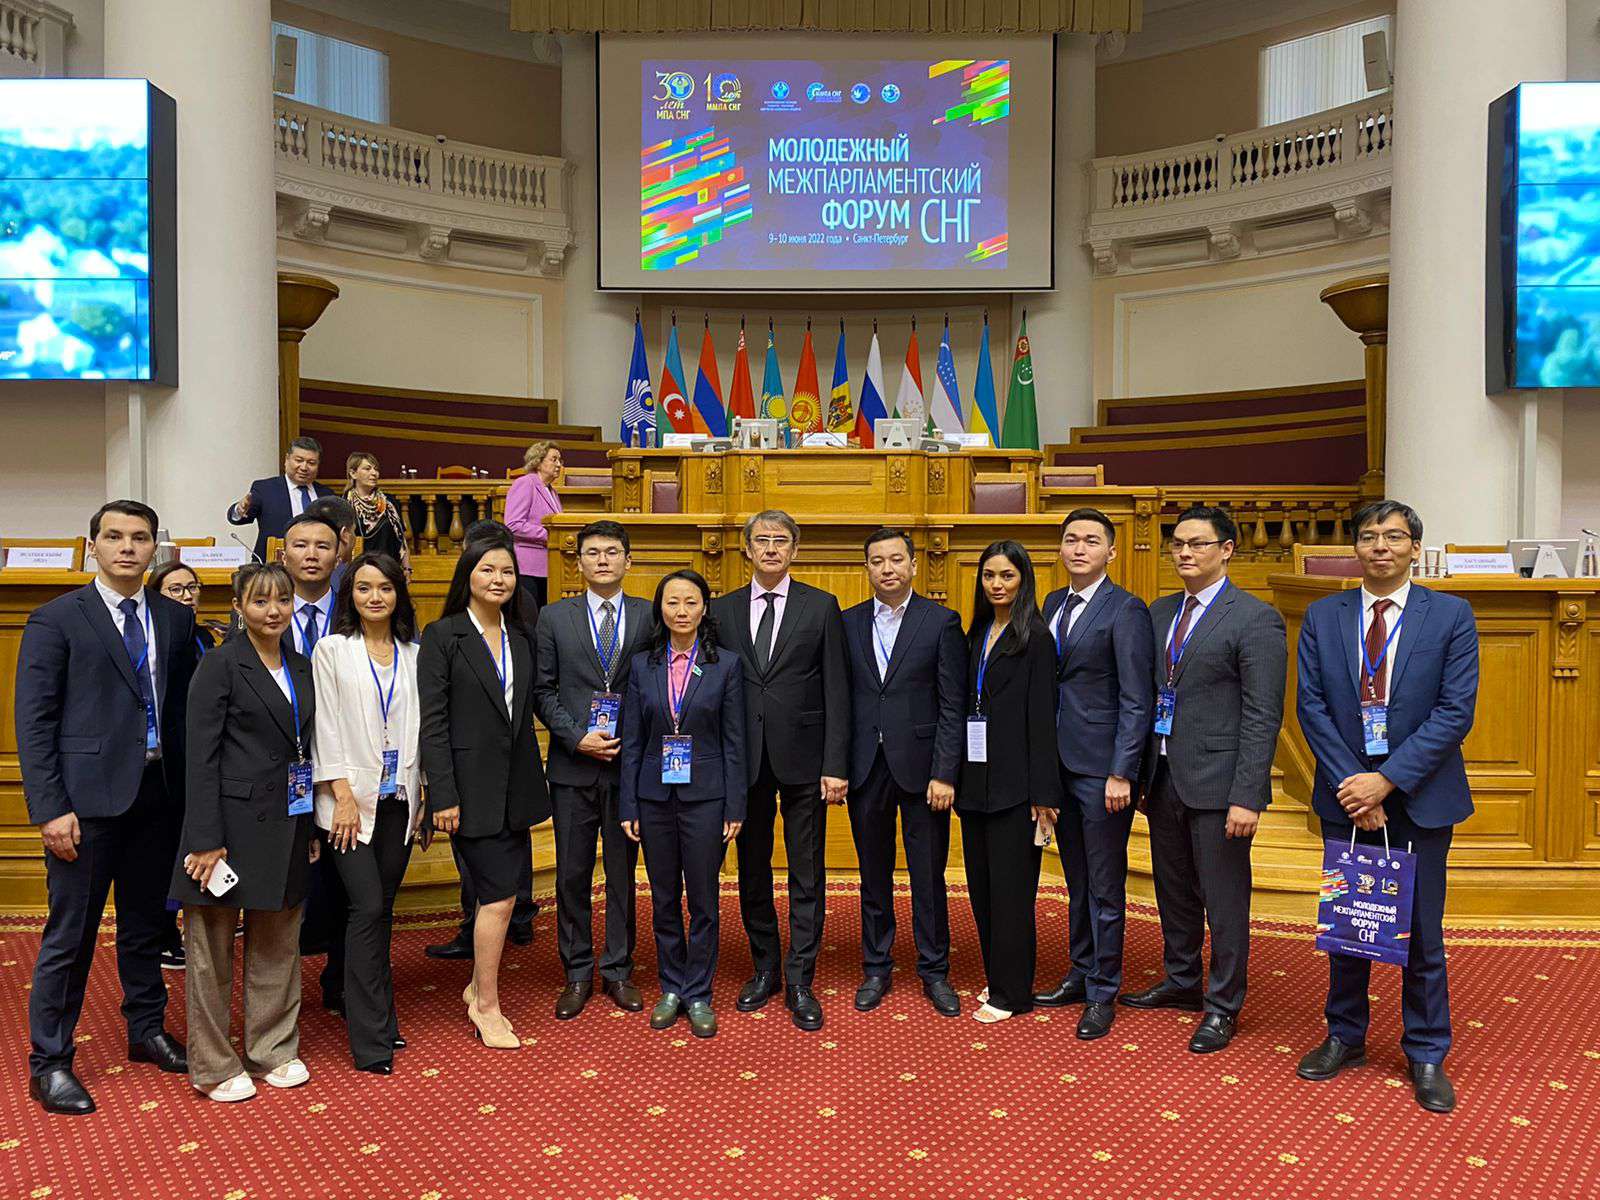 Мажилисмены приняли участие в Молодежном межпарламентском форуме государств – участников СНГ